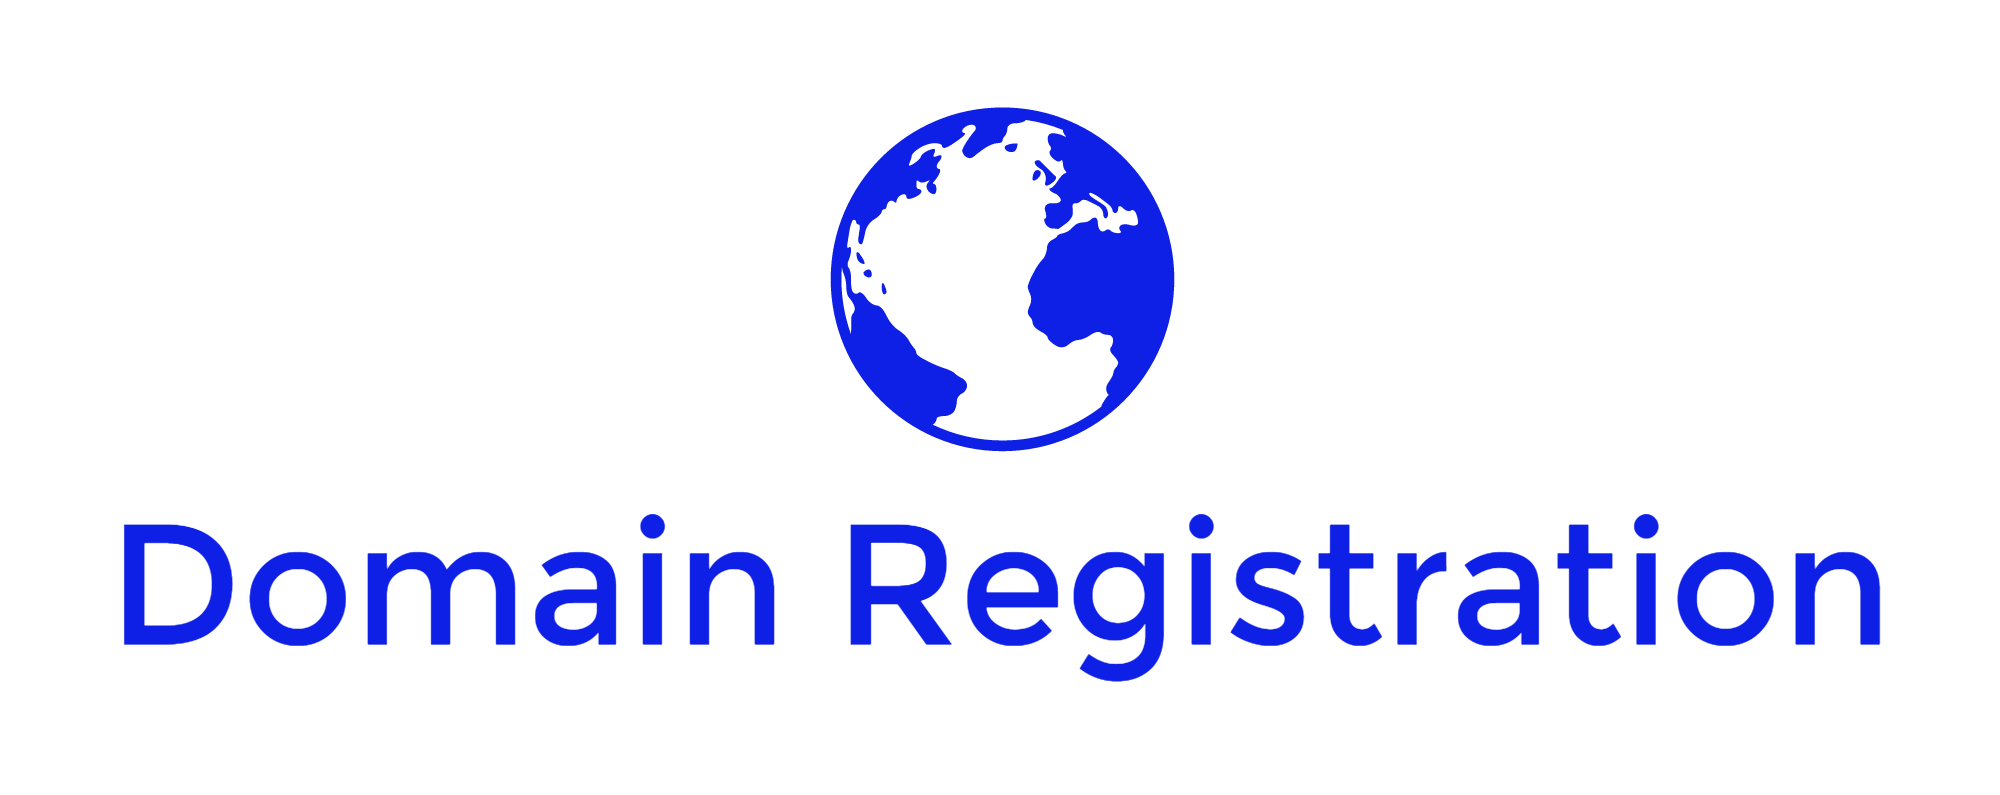 Domain Registration-logo.png